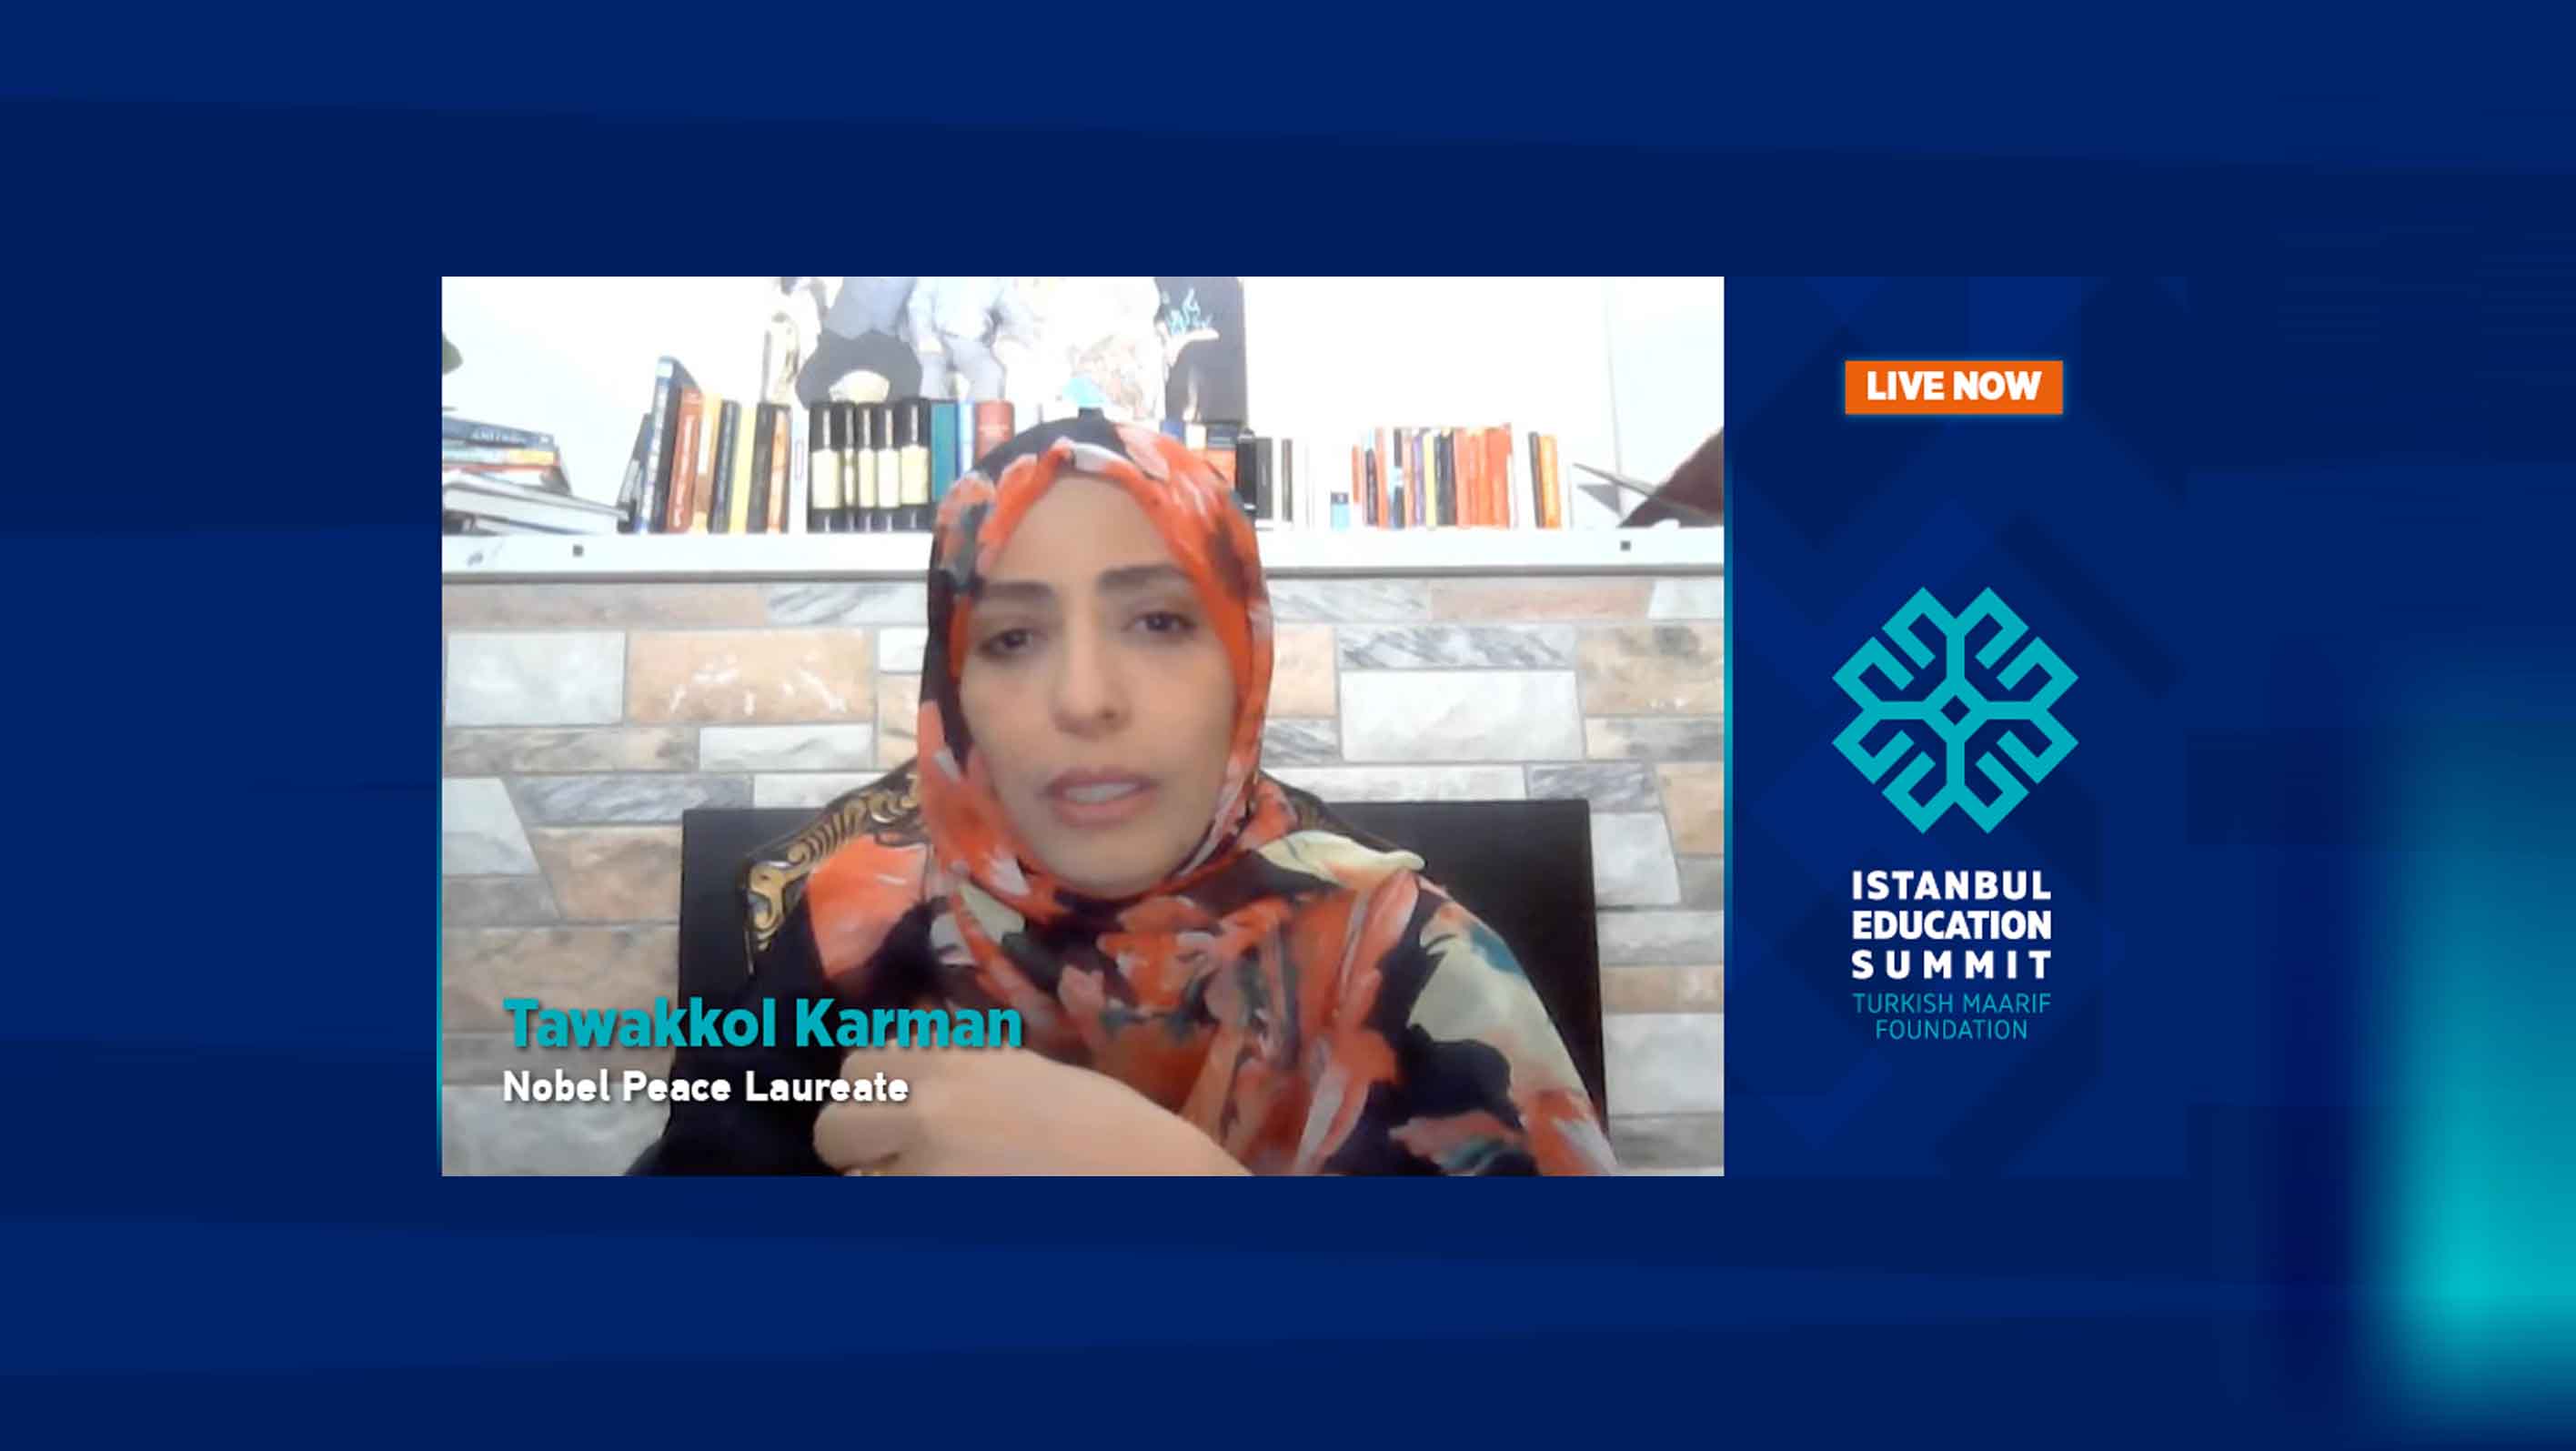 Tawakkol Karman's speech at the Istanbul Education Summit